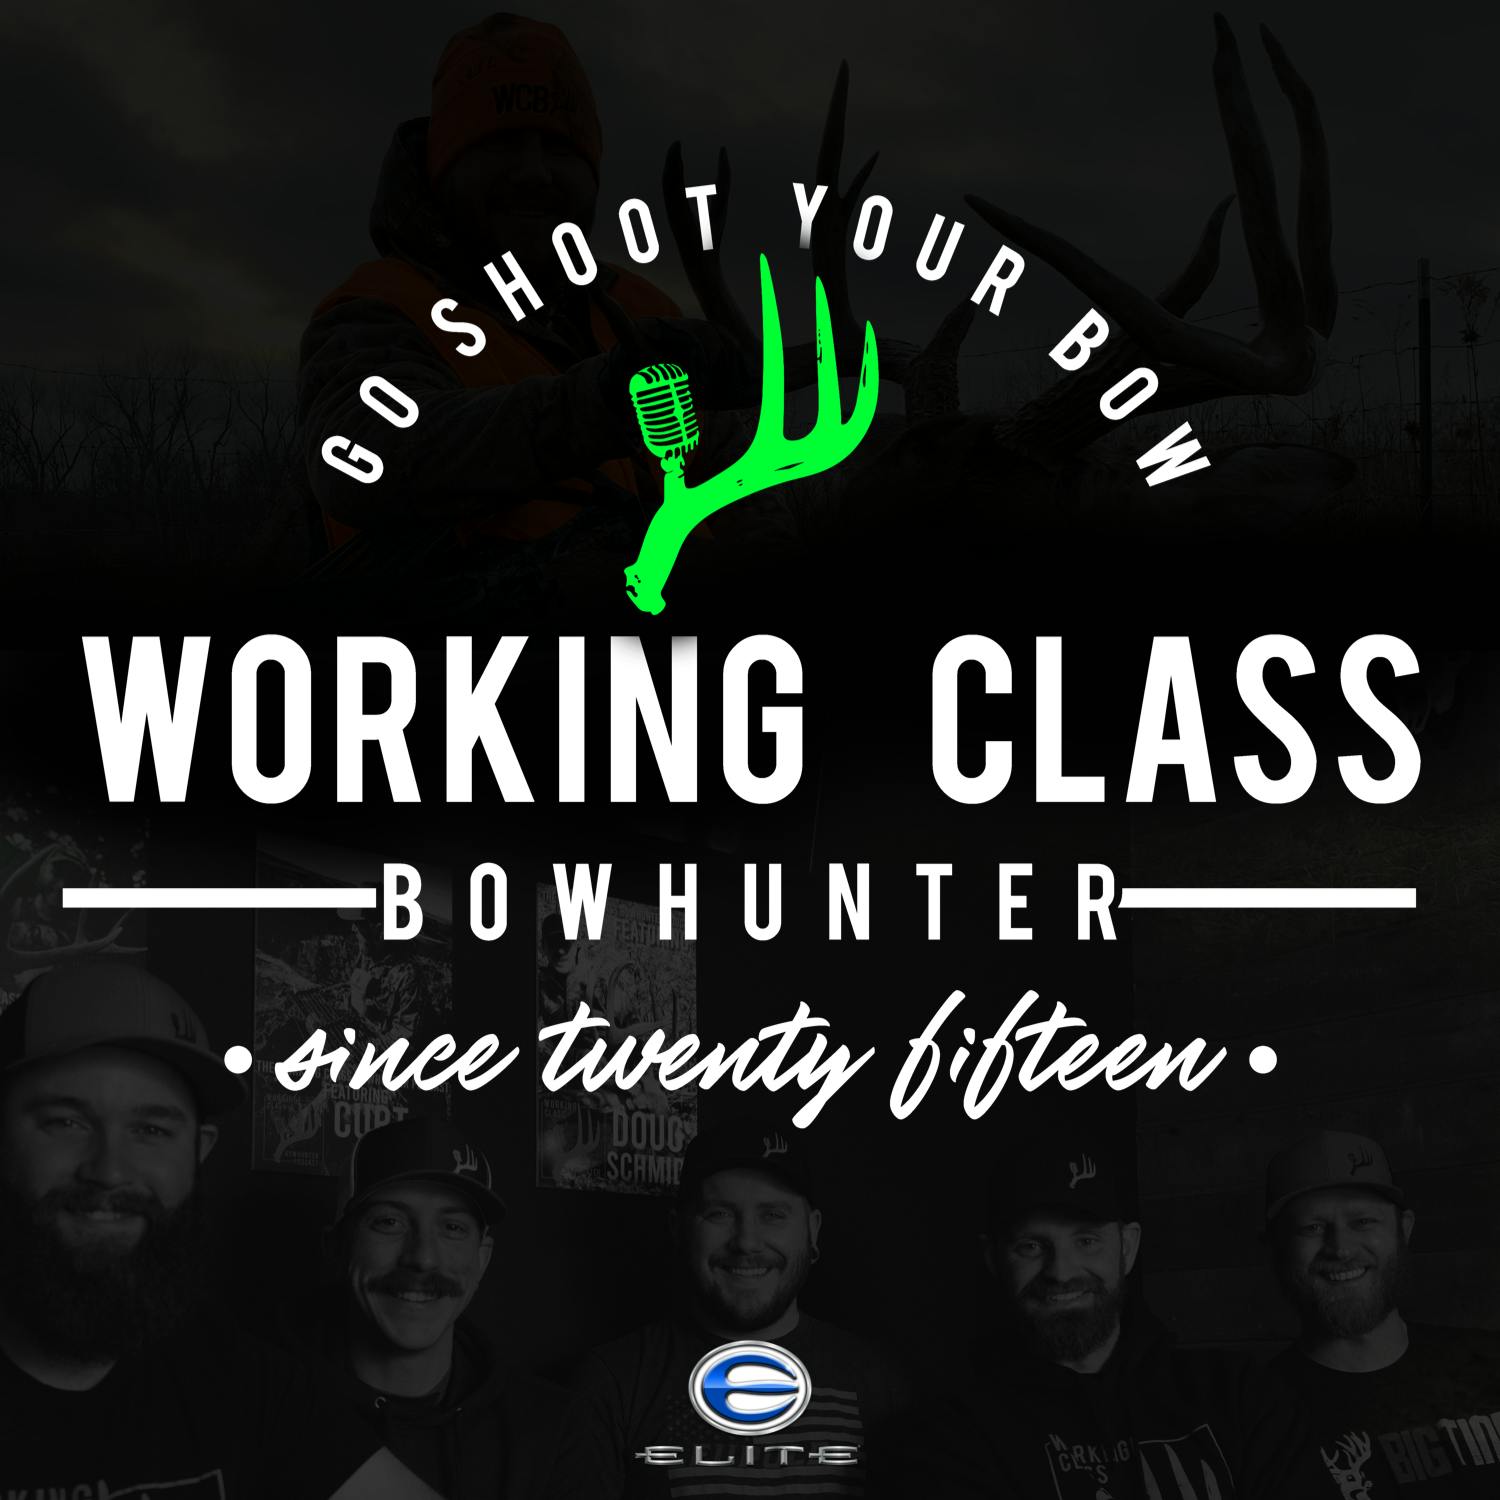 Working Class Bowhunter:Working Class Bowhunter